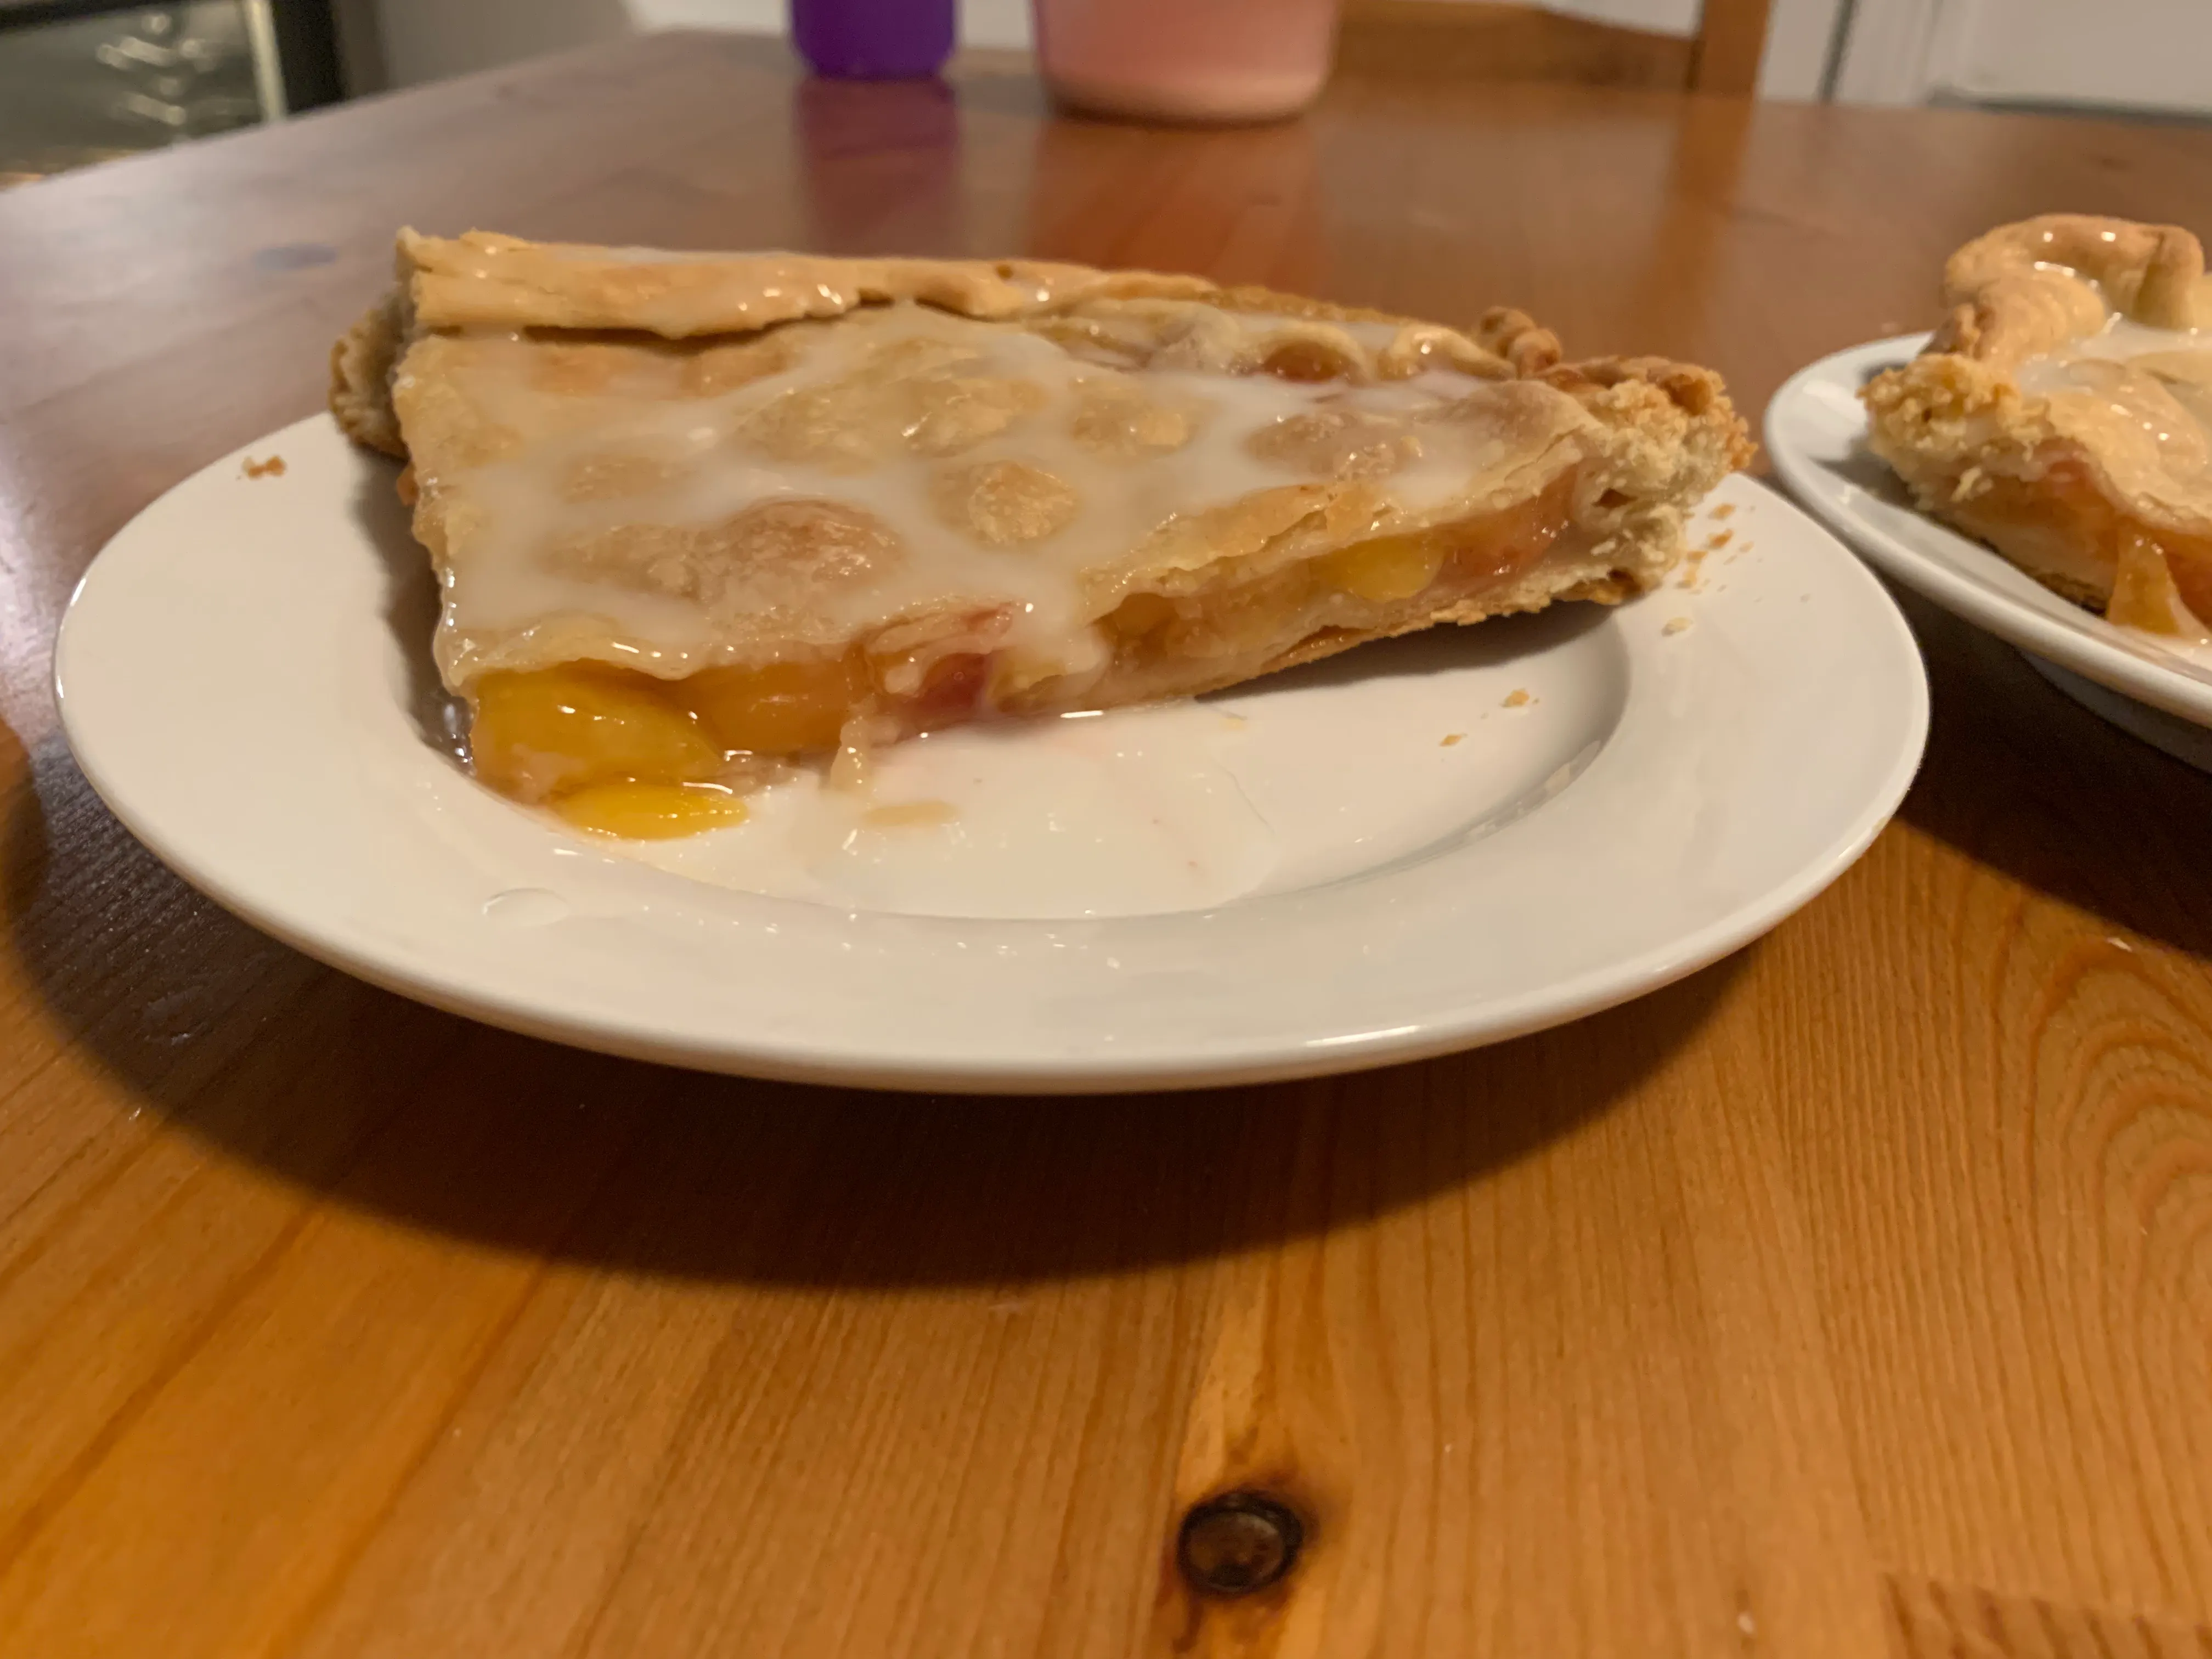 Slice of pie with lemon glaze